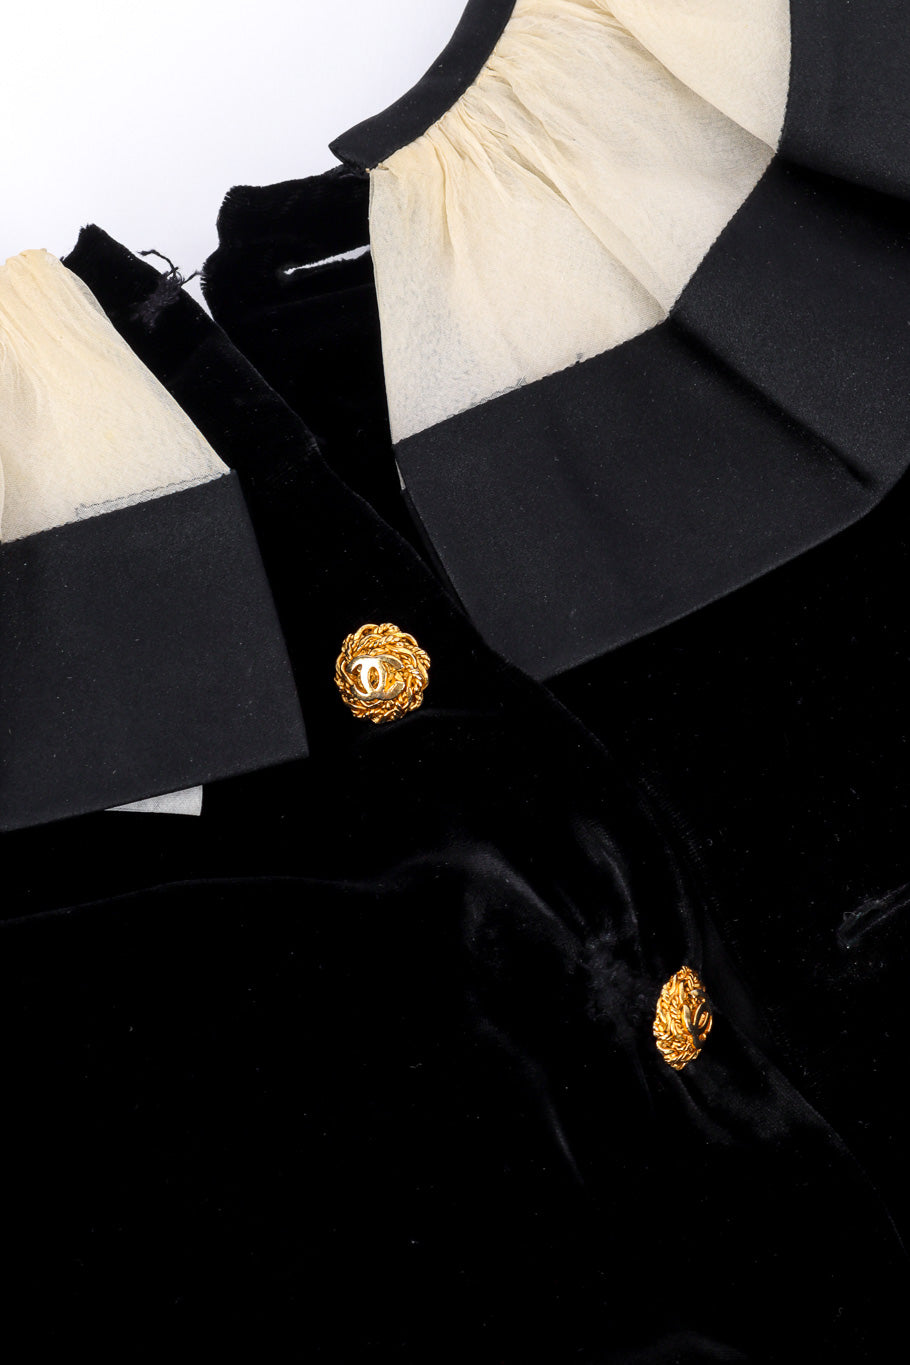 Velvet Ruffle Dress by Chanel back of collar @recessla